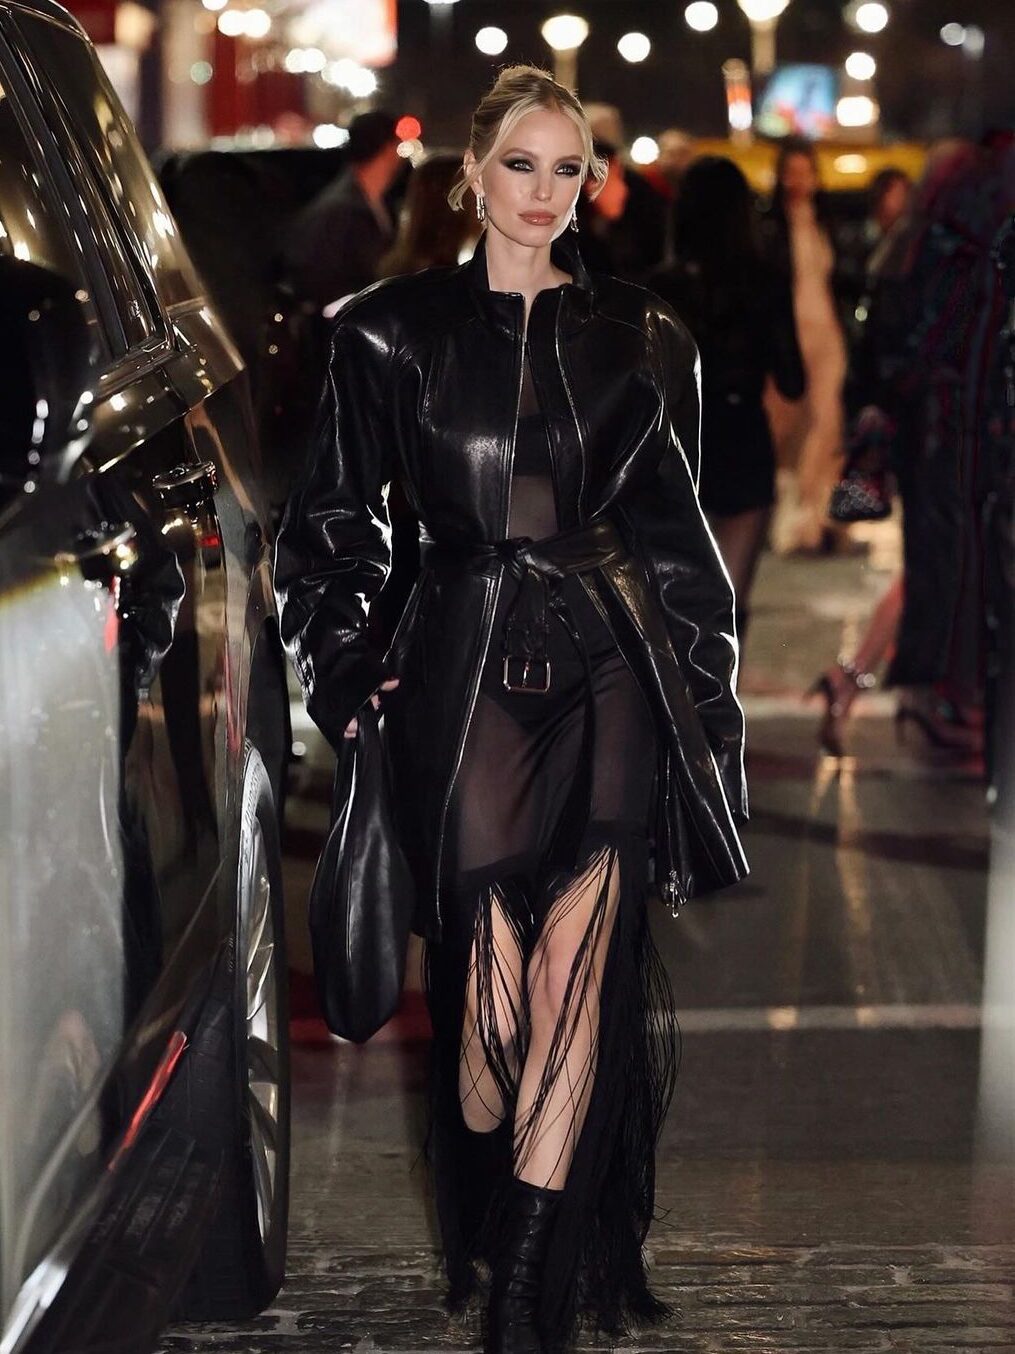 Leonie Hanne usando um vestido transparente com franjas, coturno e um casaco puffer de couro por cima, em um look todo preto.